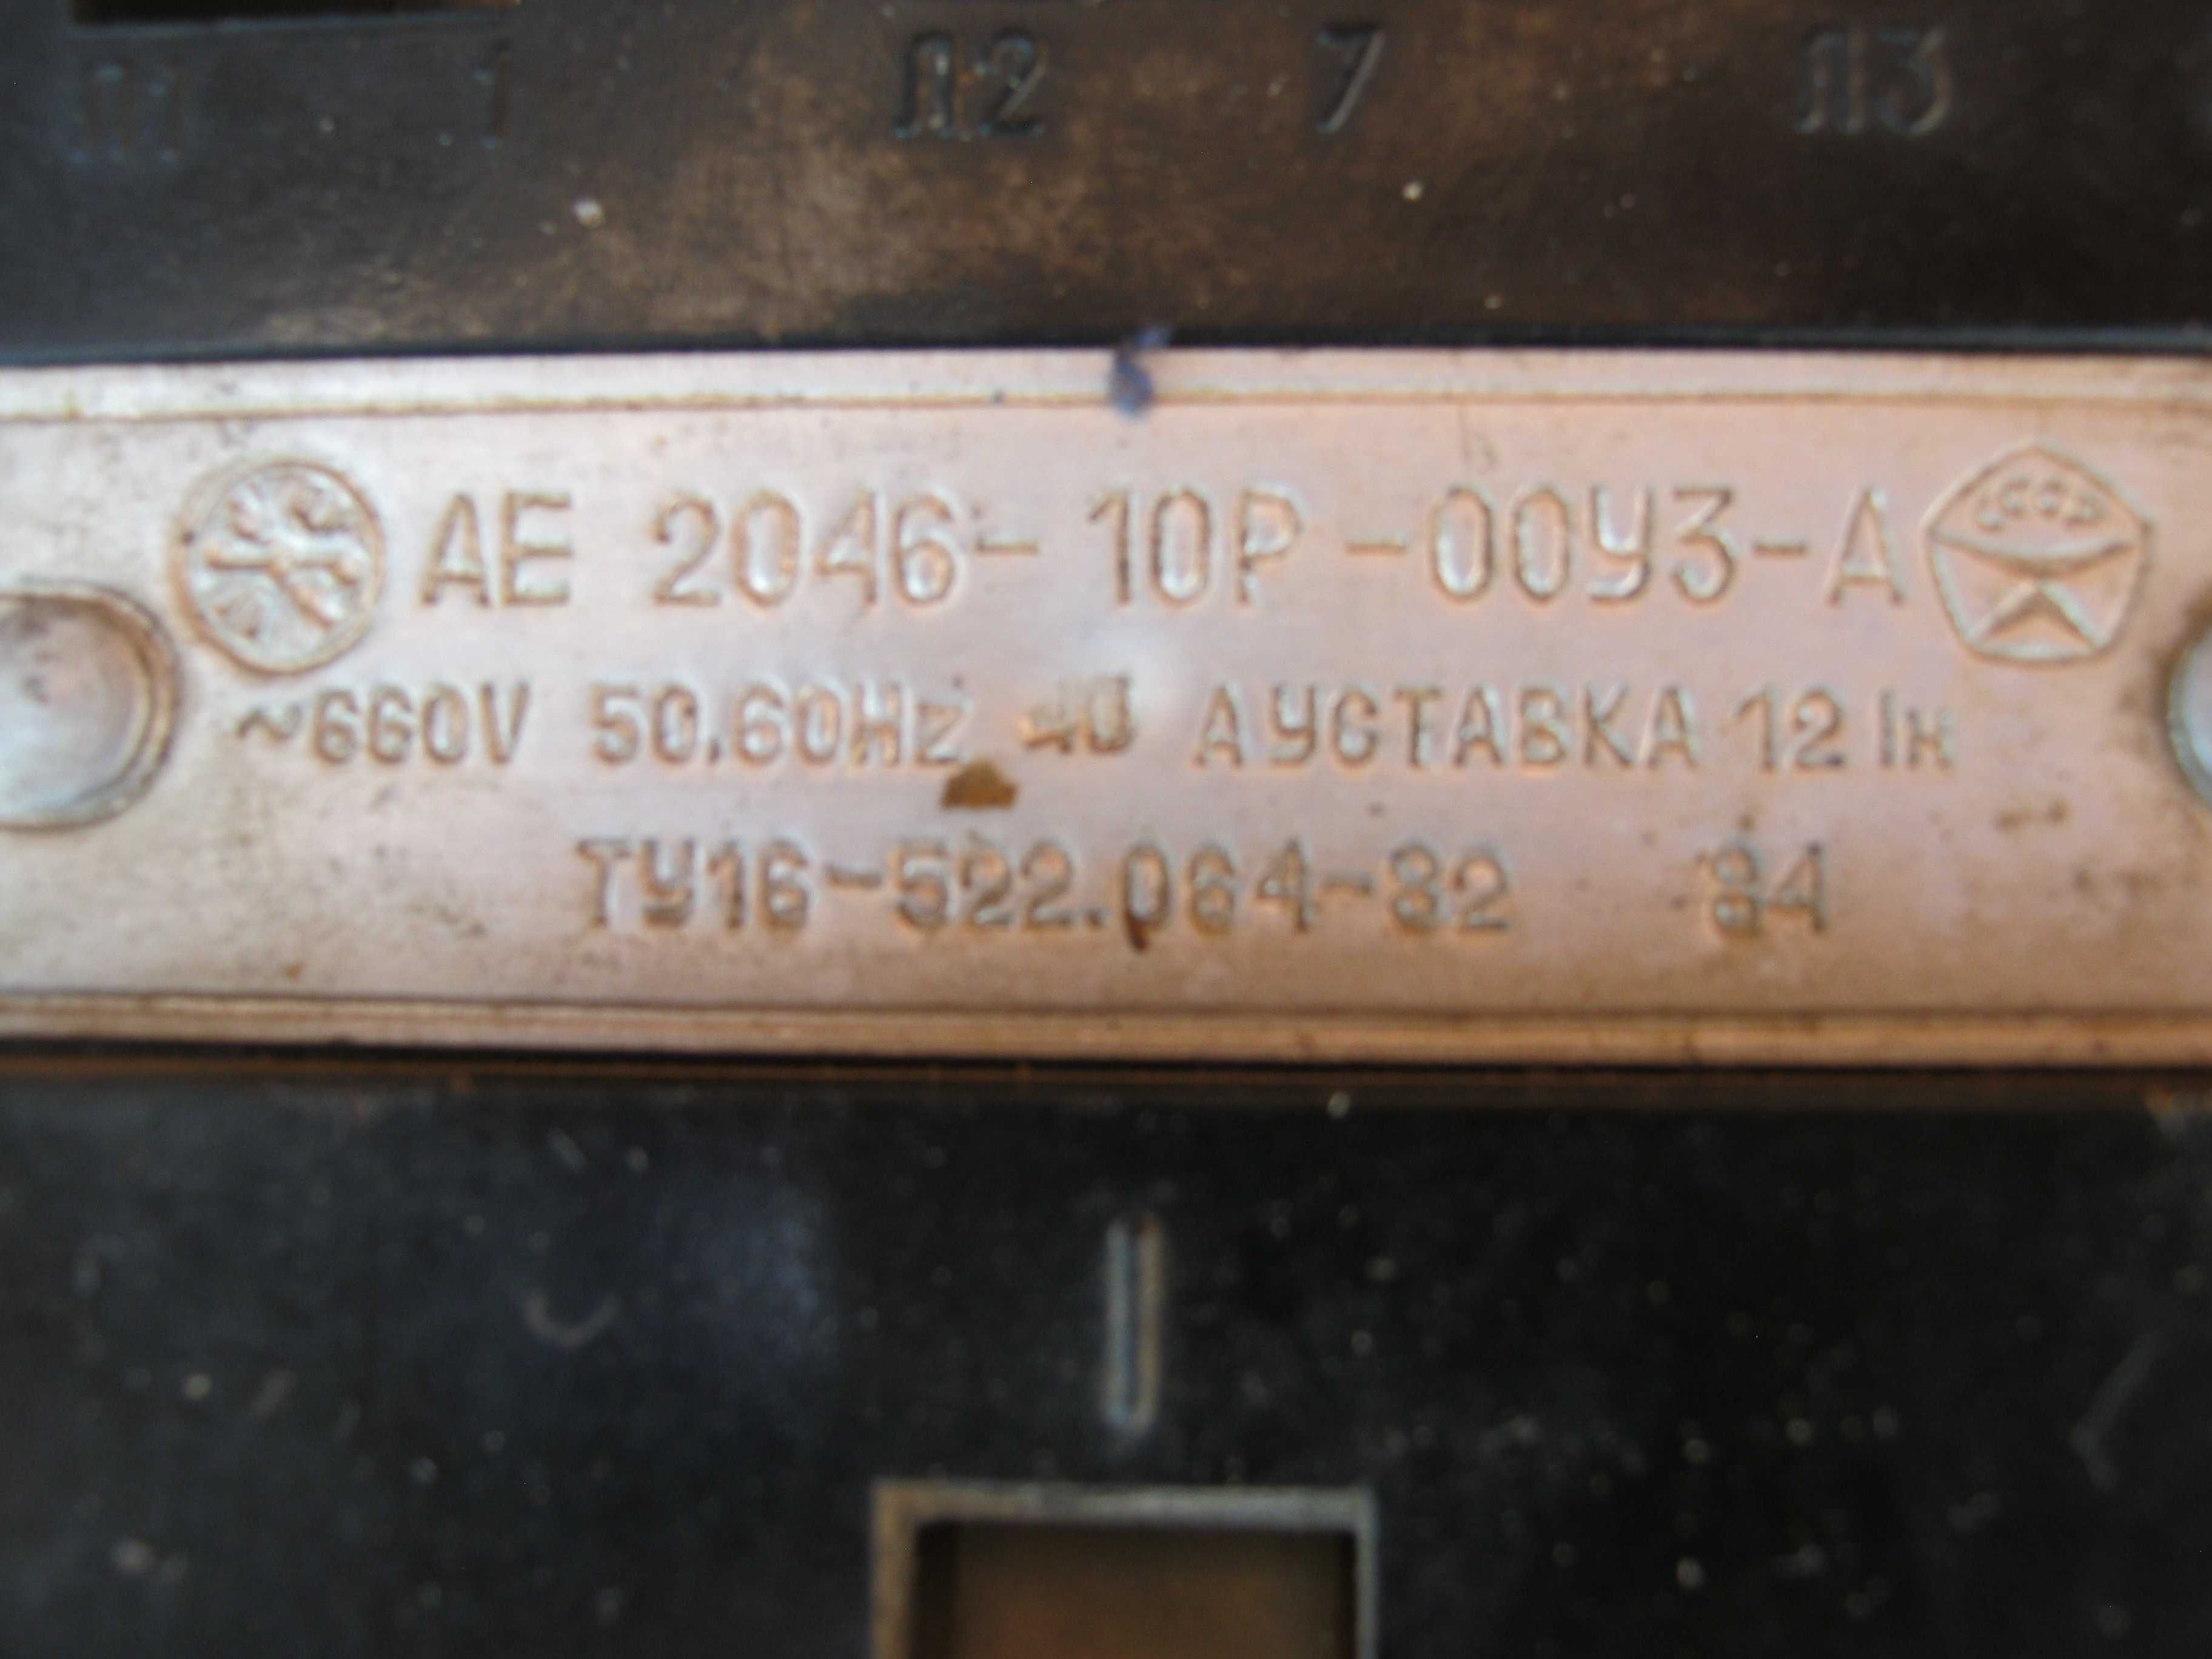 автоматический выключатель АЕ2046-10Р-00УЗ-А  40 А.